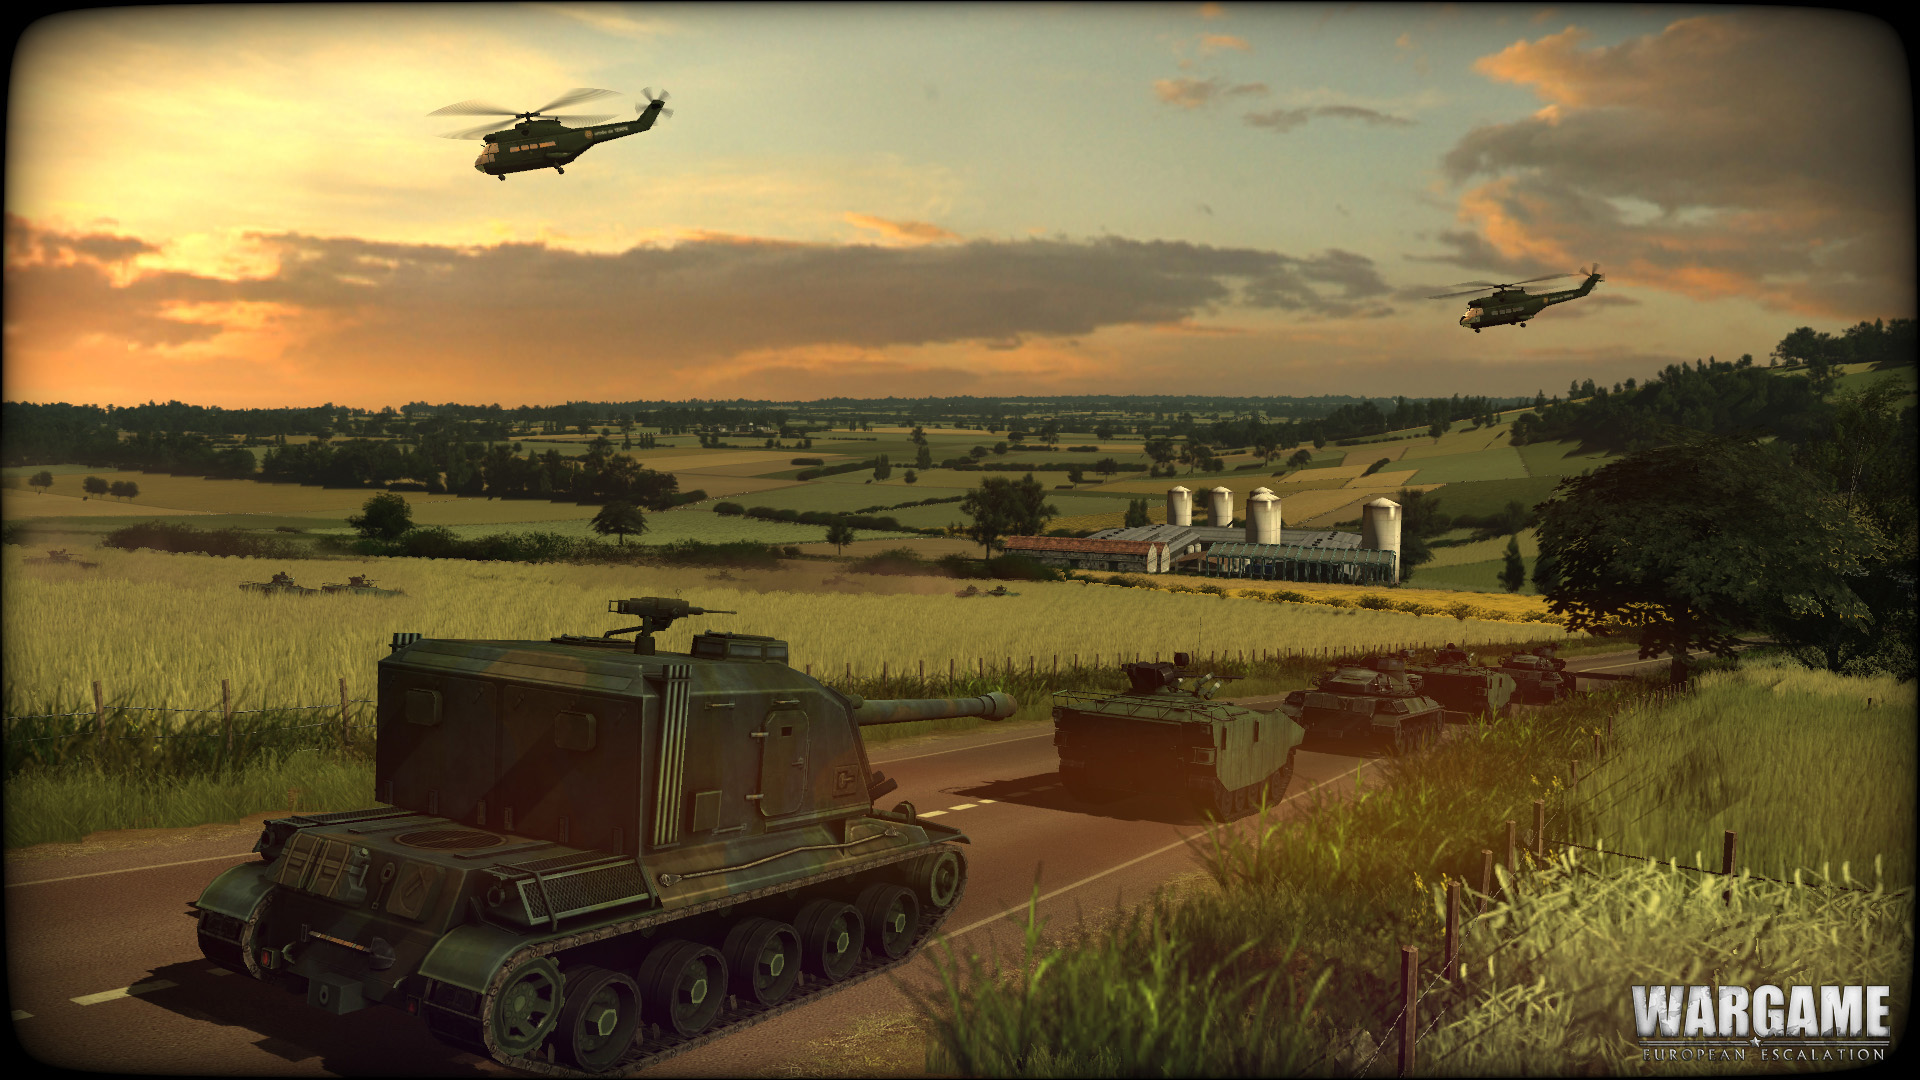 New Wargame European Escalation Screenshots